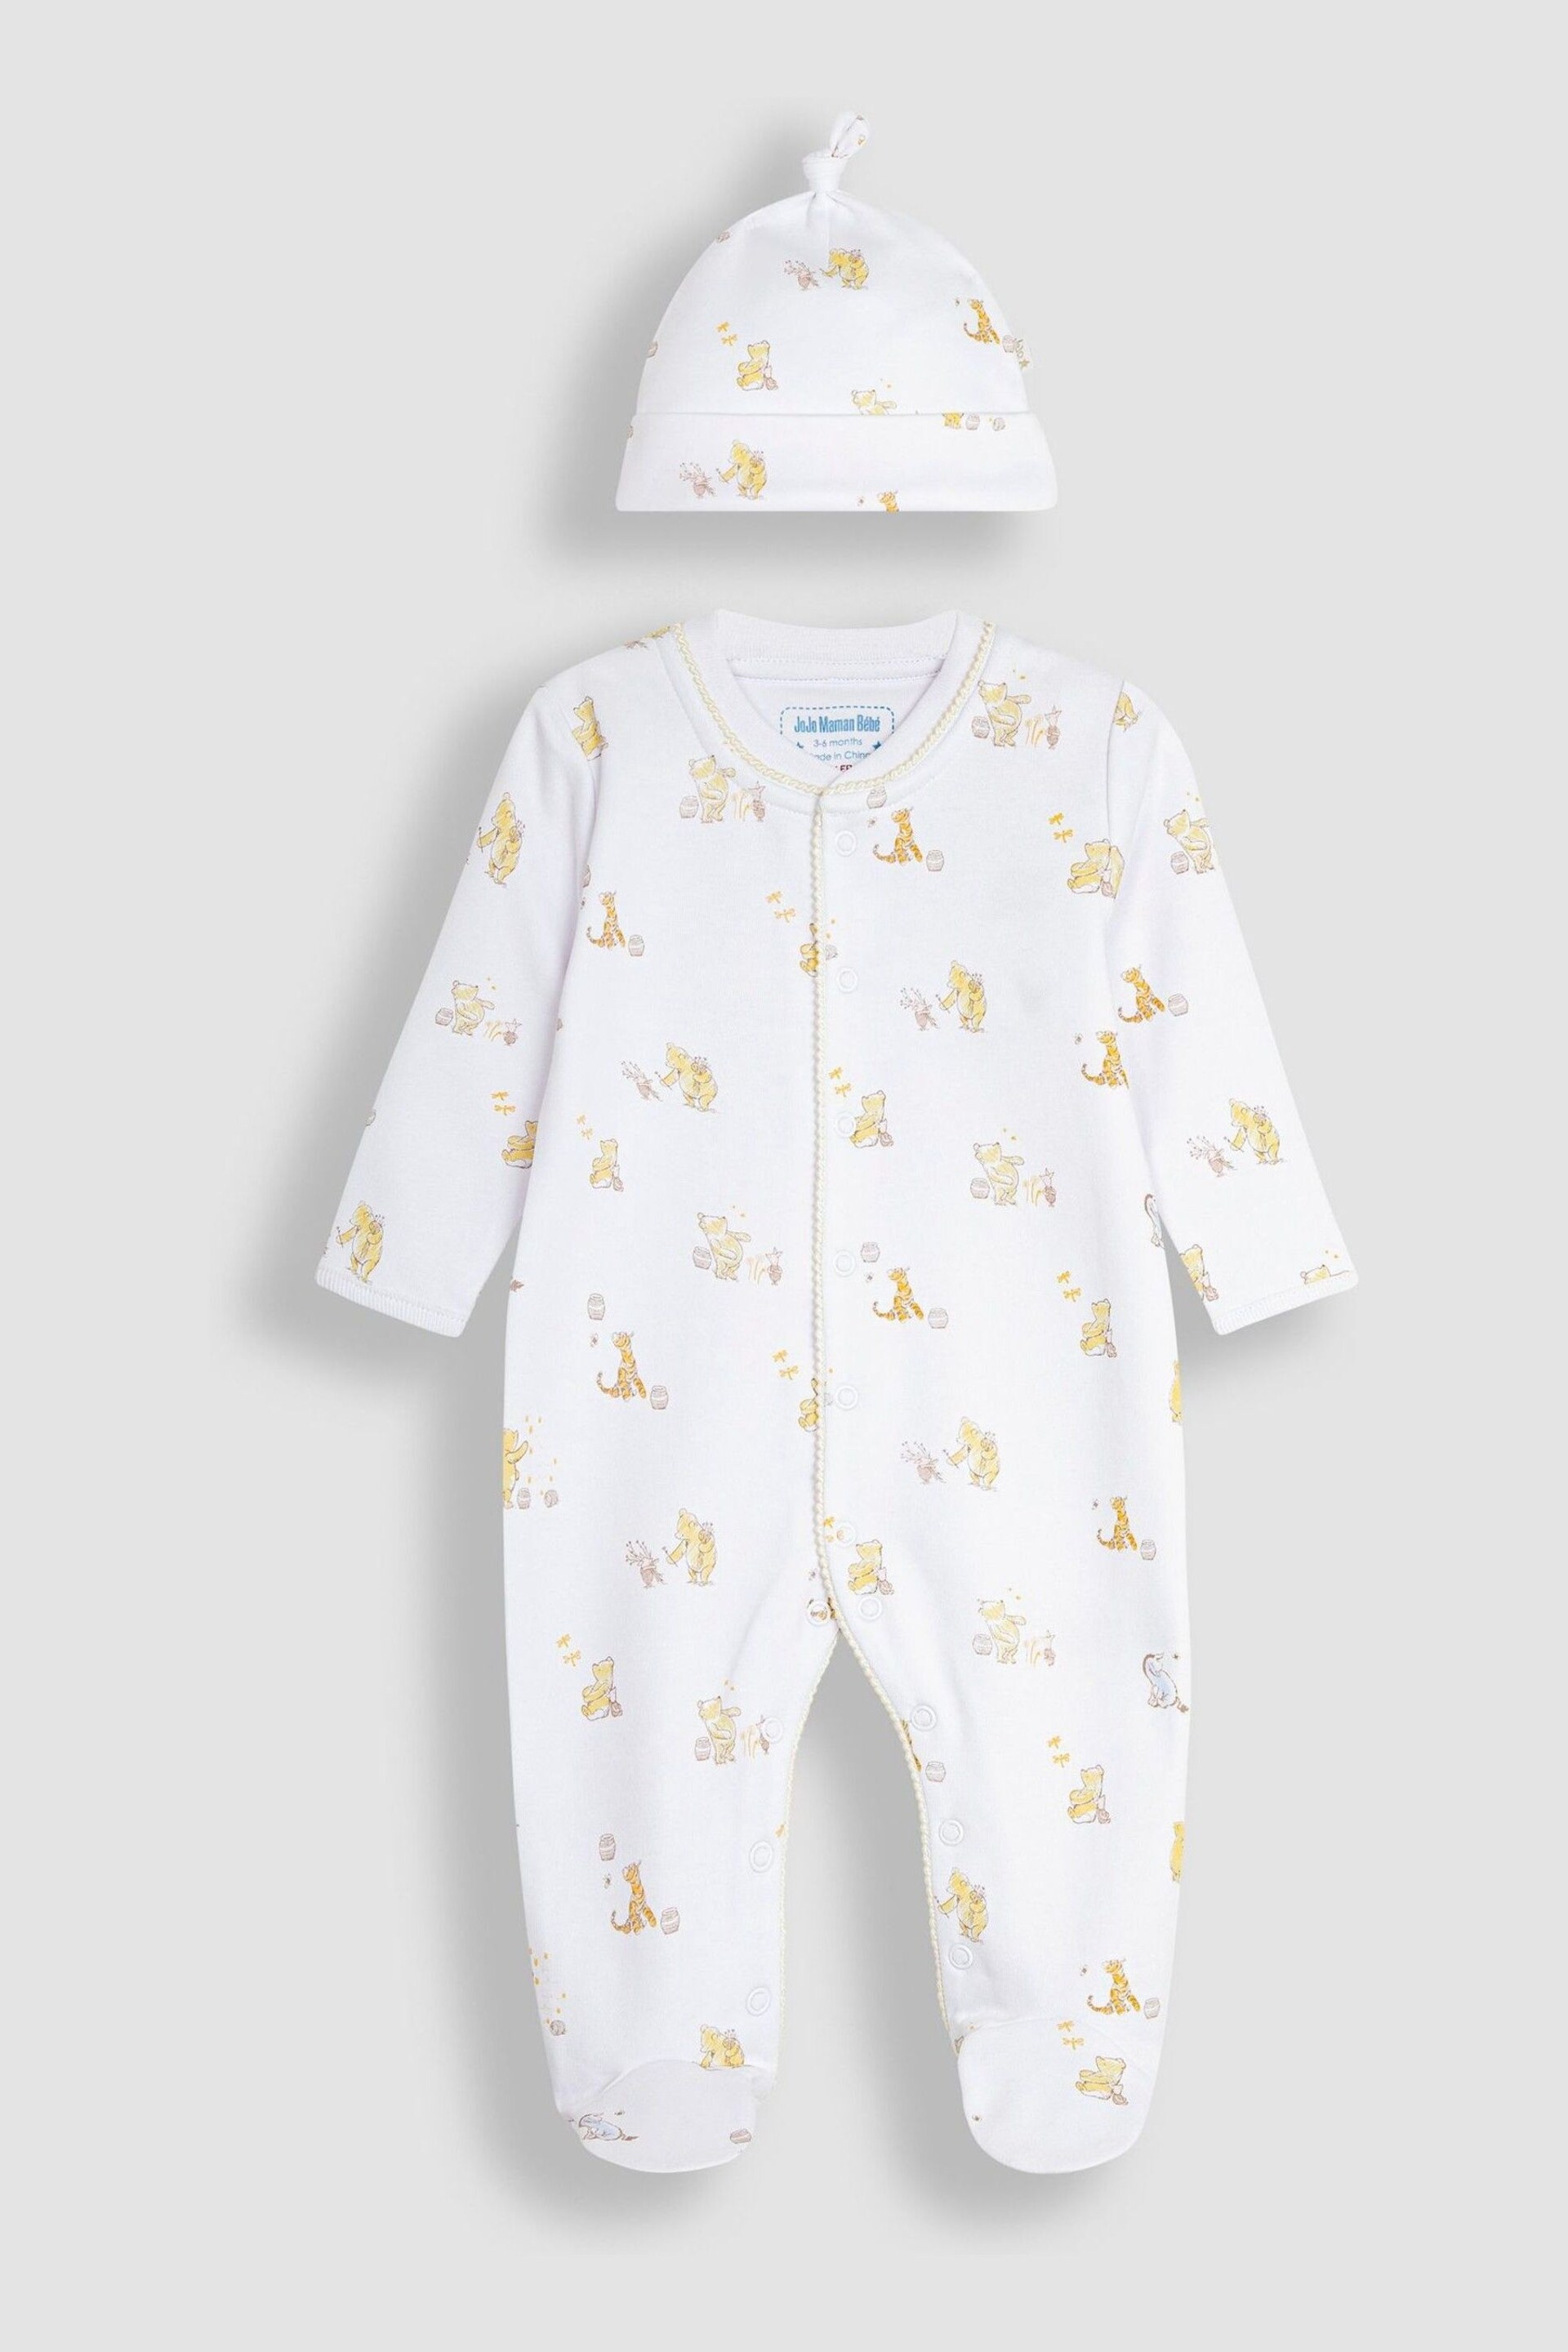 JoJo Maman Bébé Cream Winnie The Pooh Print Sleepsuit & Hat Set - Image 3 of 8